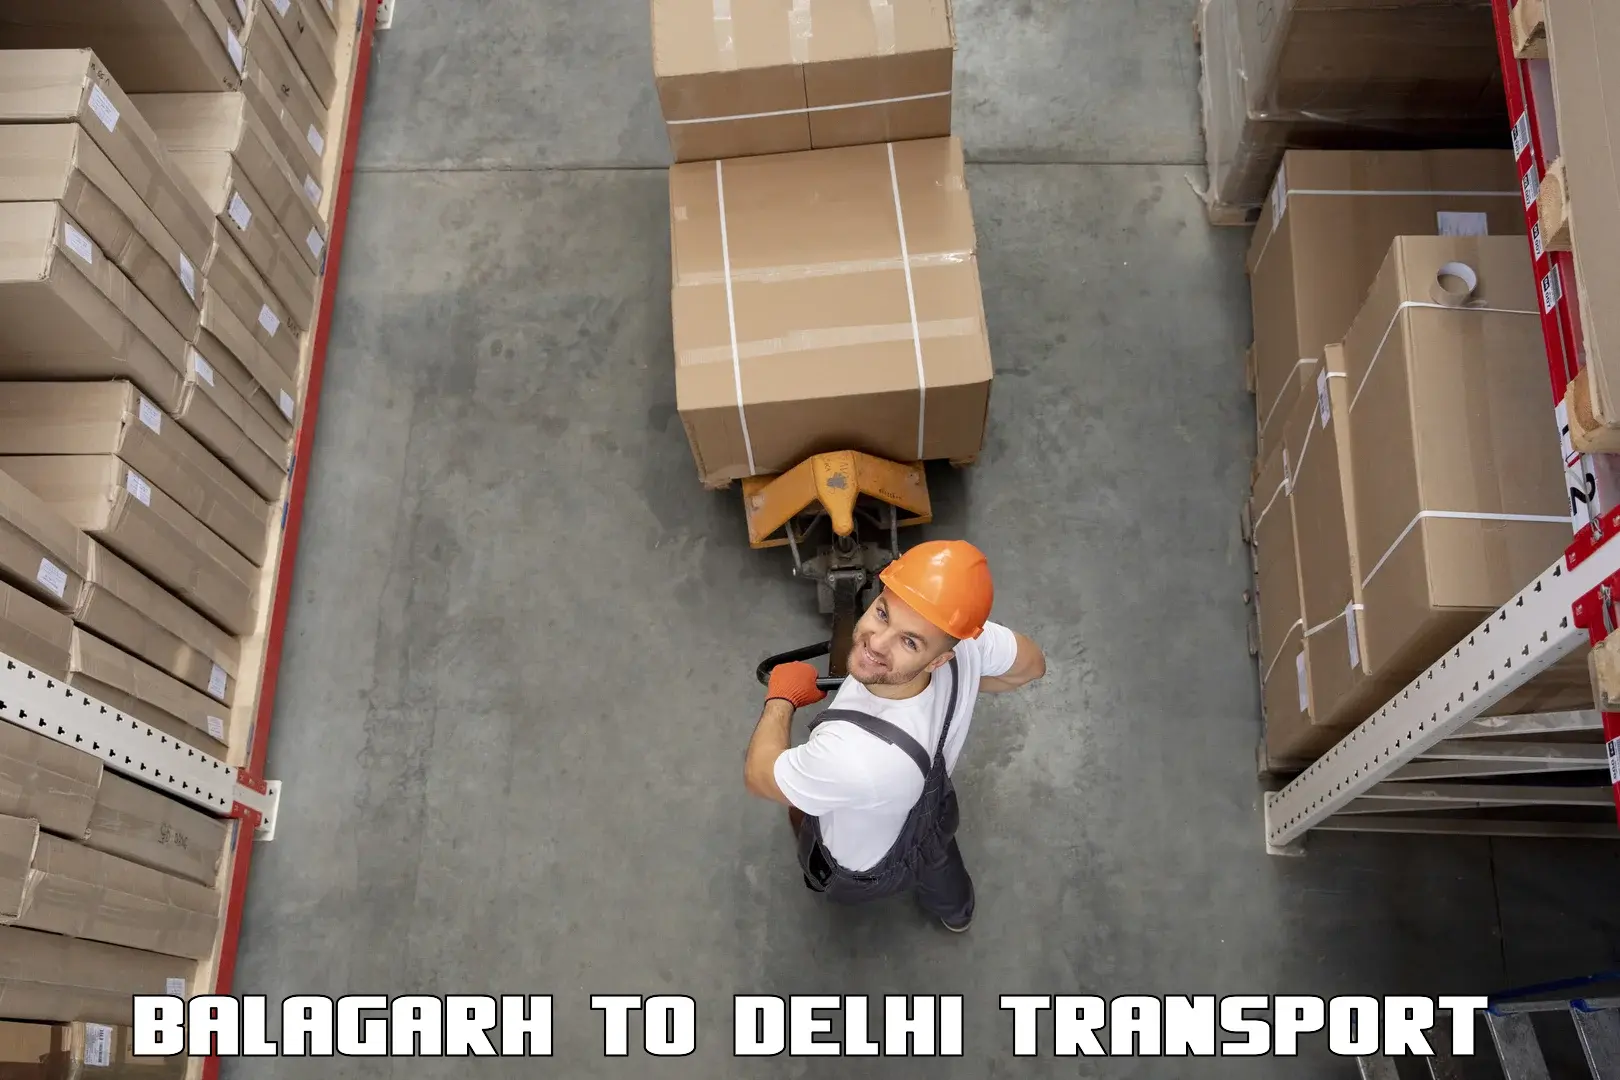 Shipping partner Balagarh to Sarojini Nagar